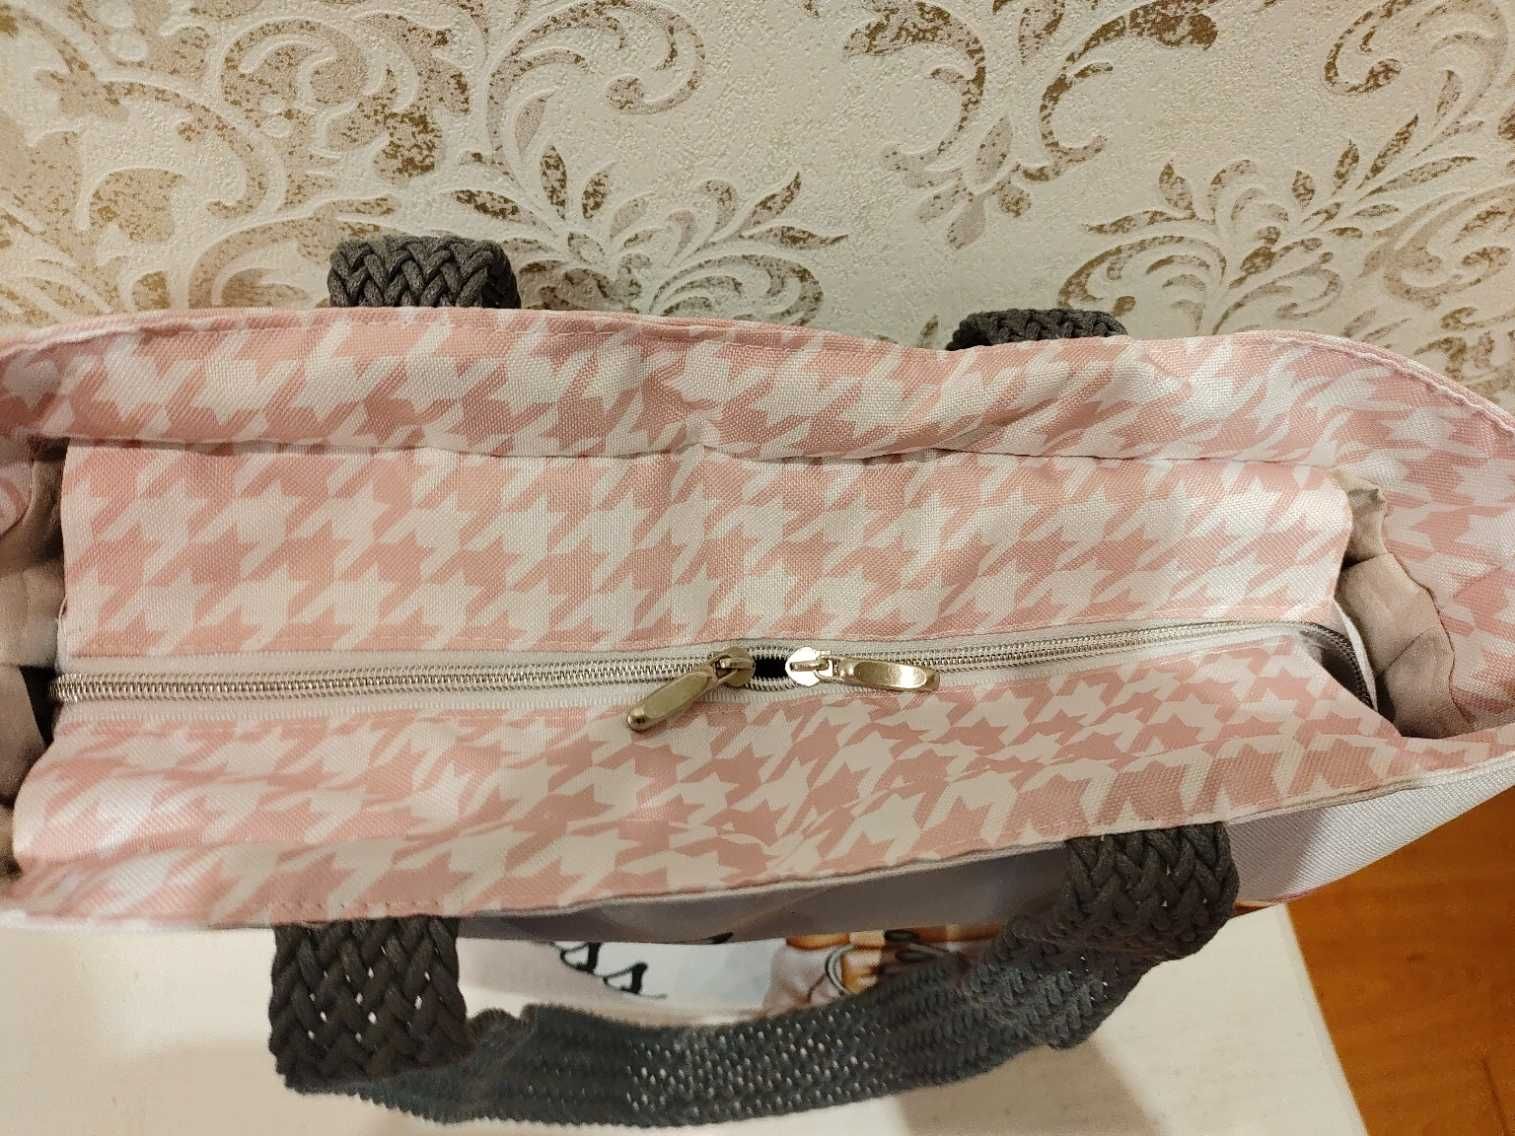 torebka torba wife mom boss/ żona mama szefowa + saszetka (opcja)